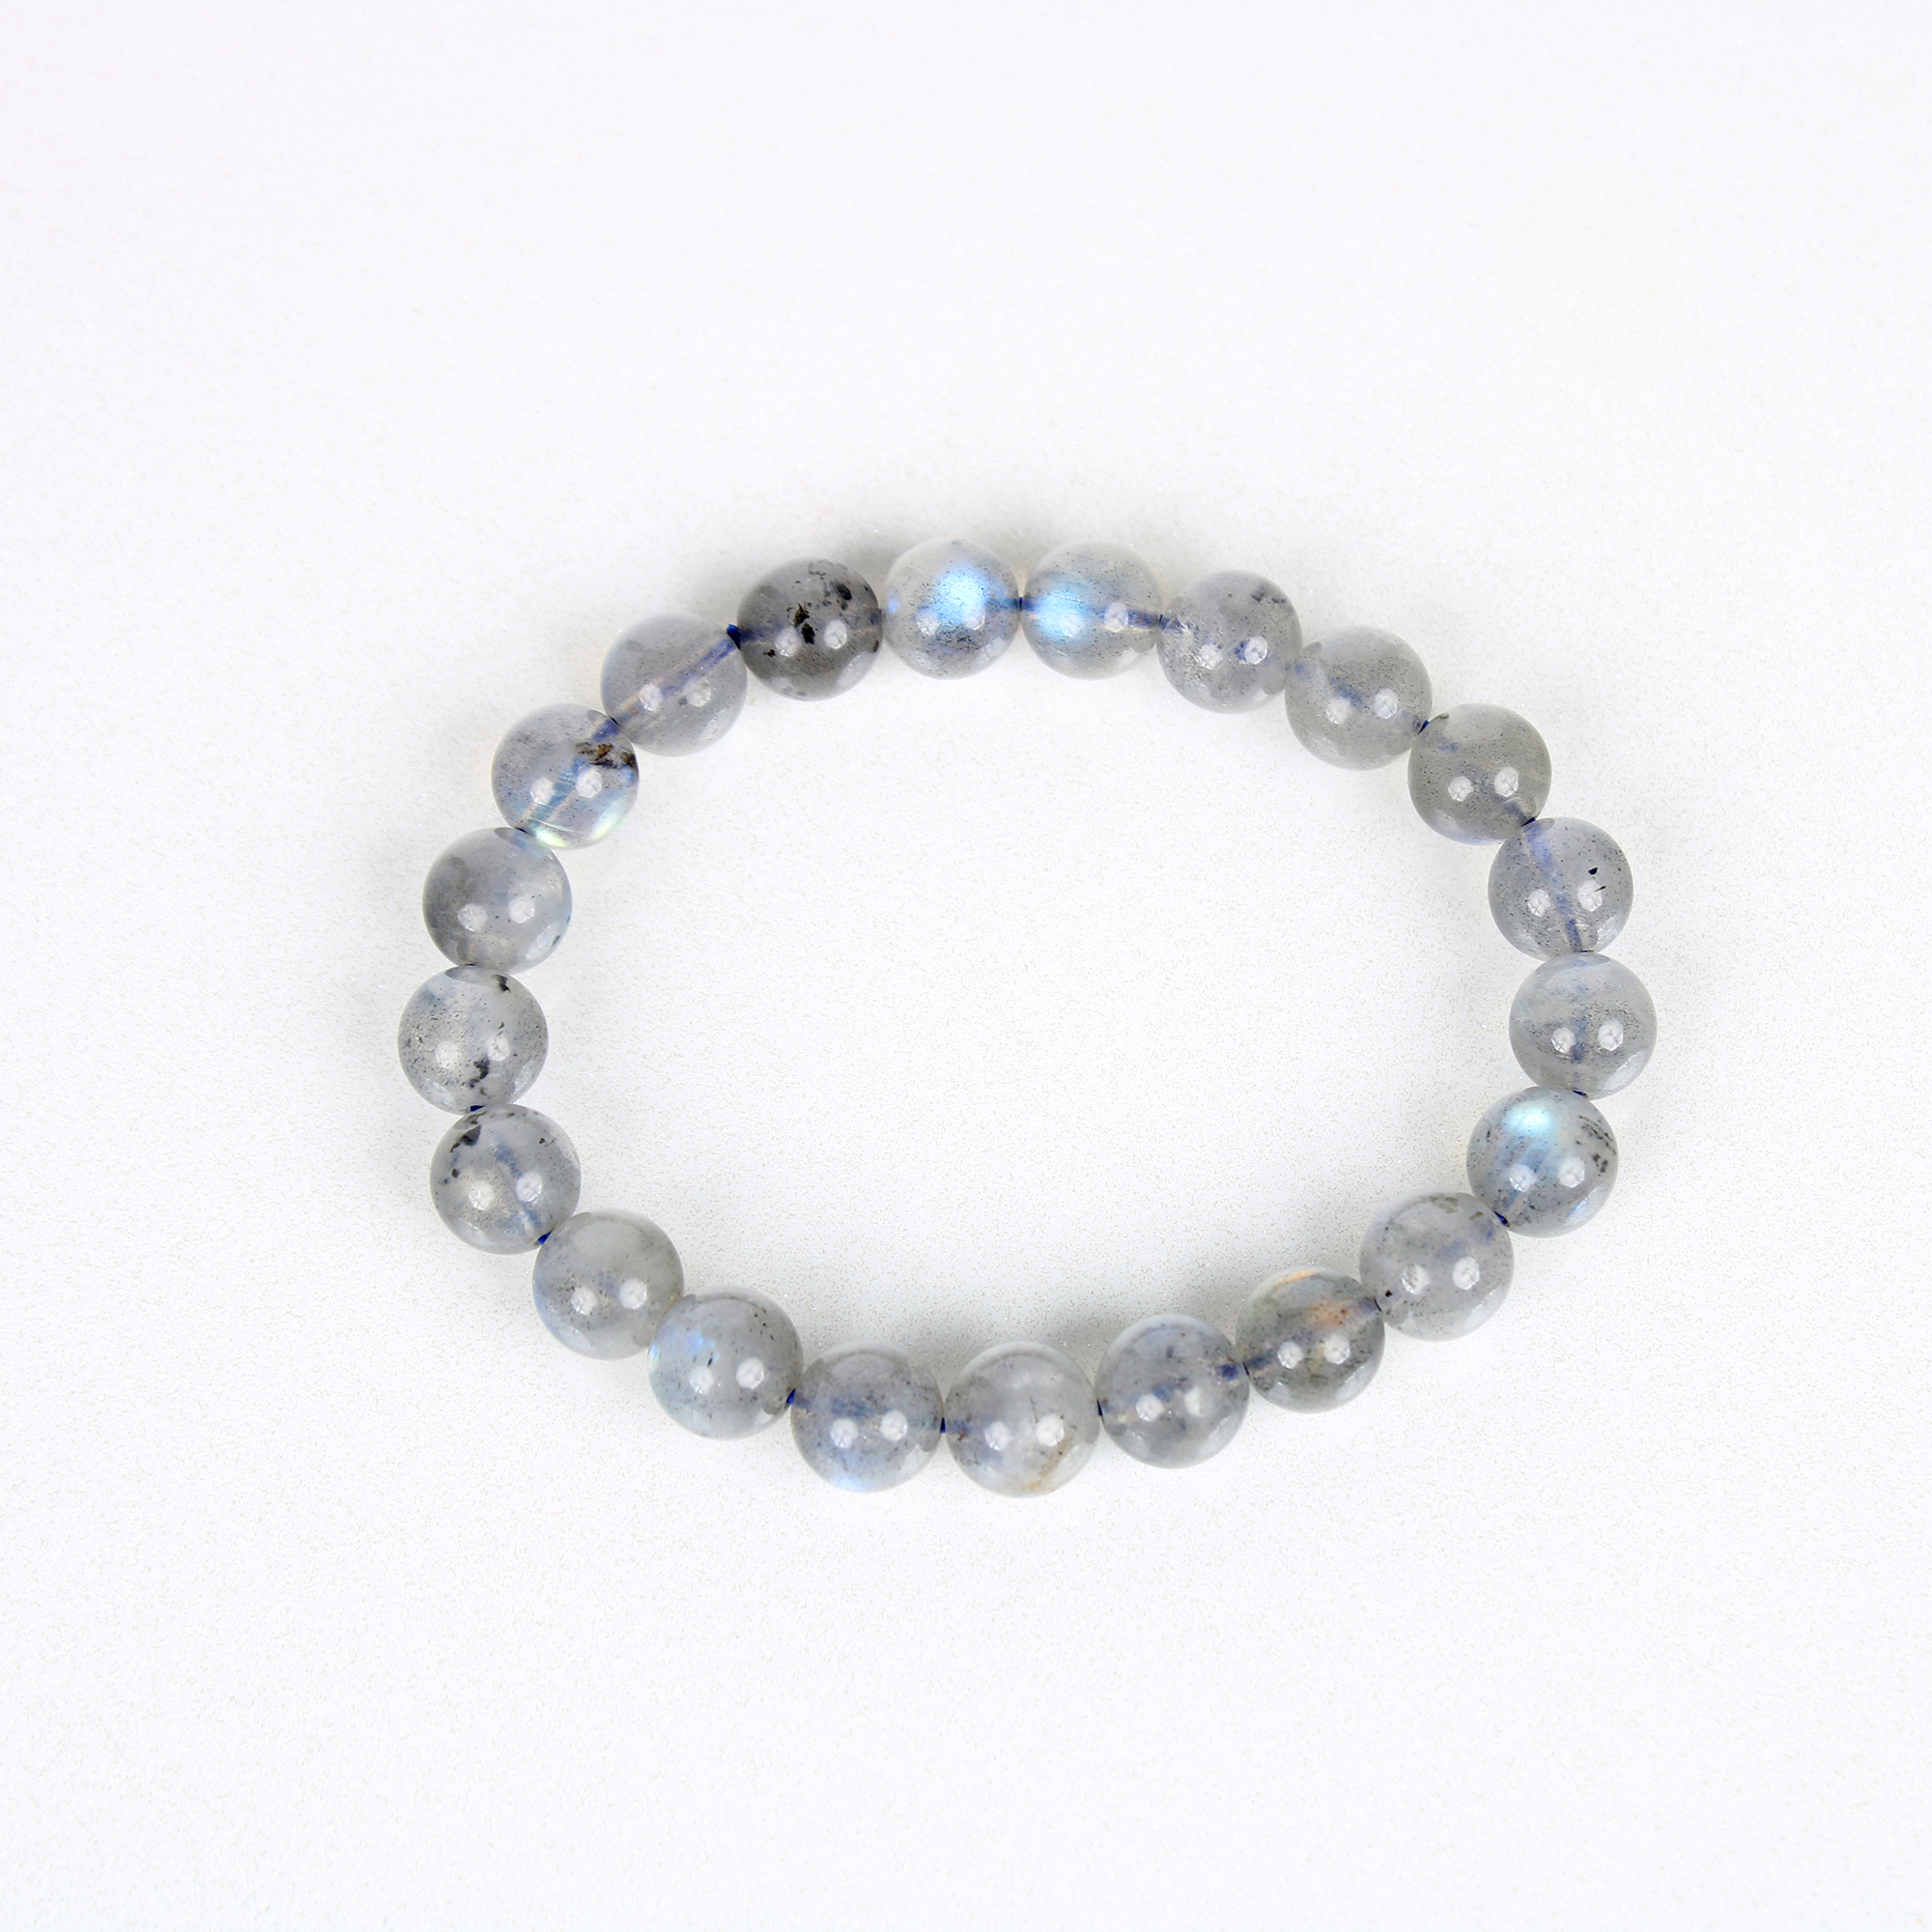 Buy Reiki Crystal Products Natural Labradorite Bracelet Crystal Stone 8mm  Faceted Bracelet for Reiki Healing and Crystal Healing Stones | Globally